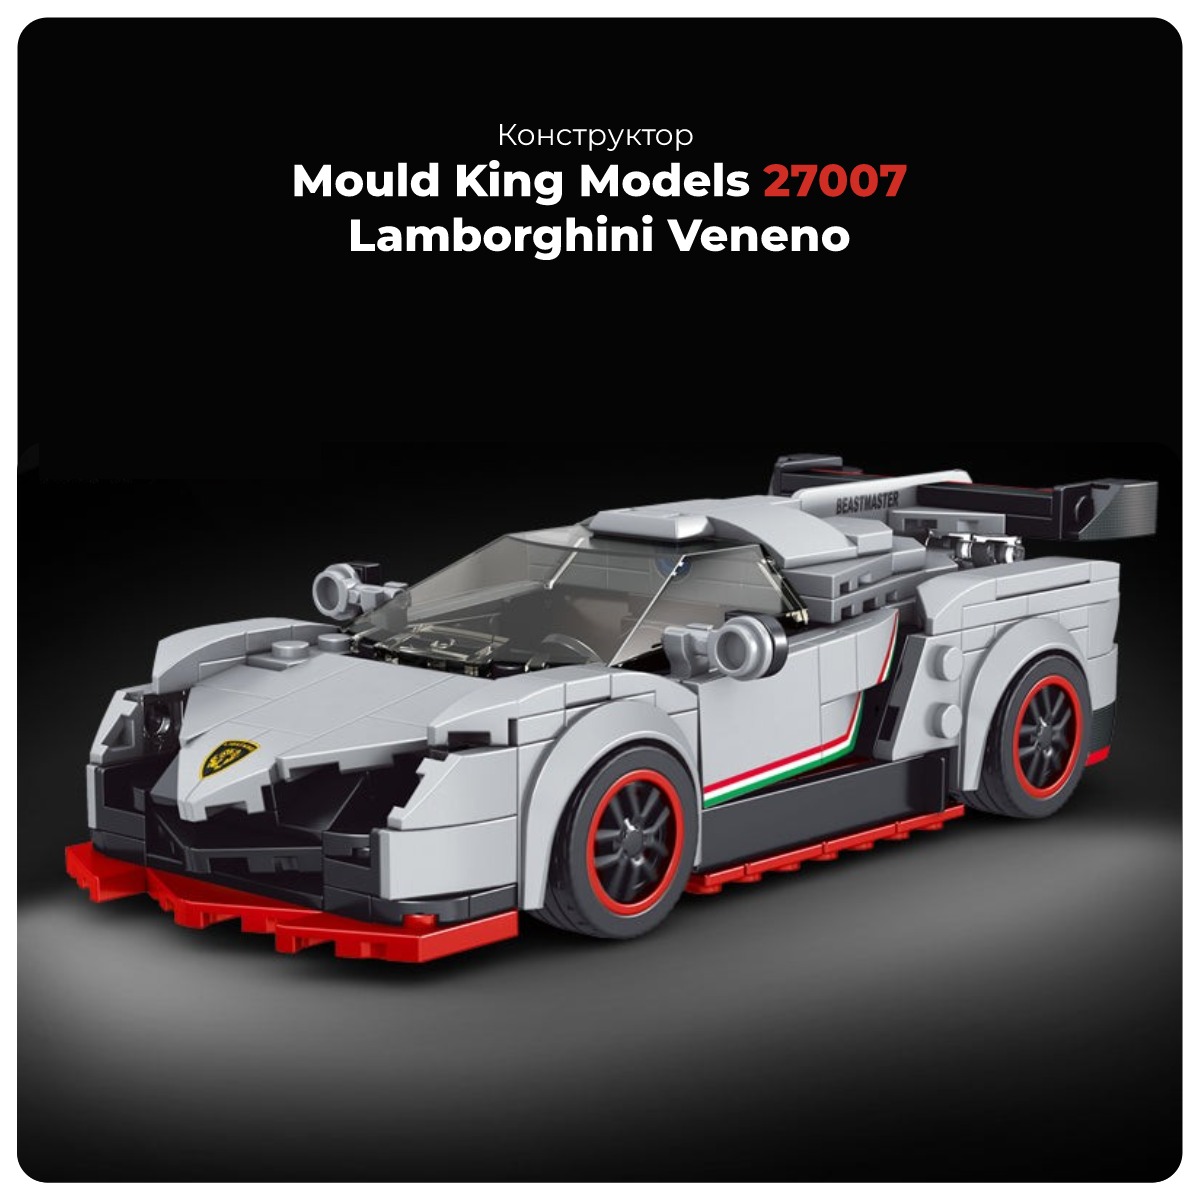 Mould-King-Models-27007-Lamborghini-Veneno-01